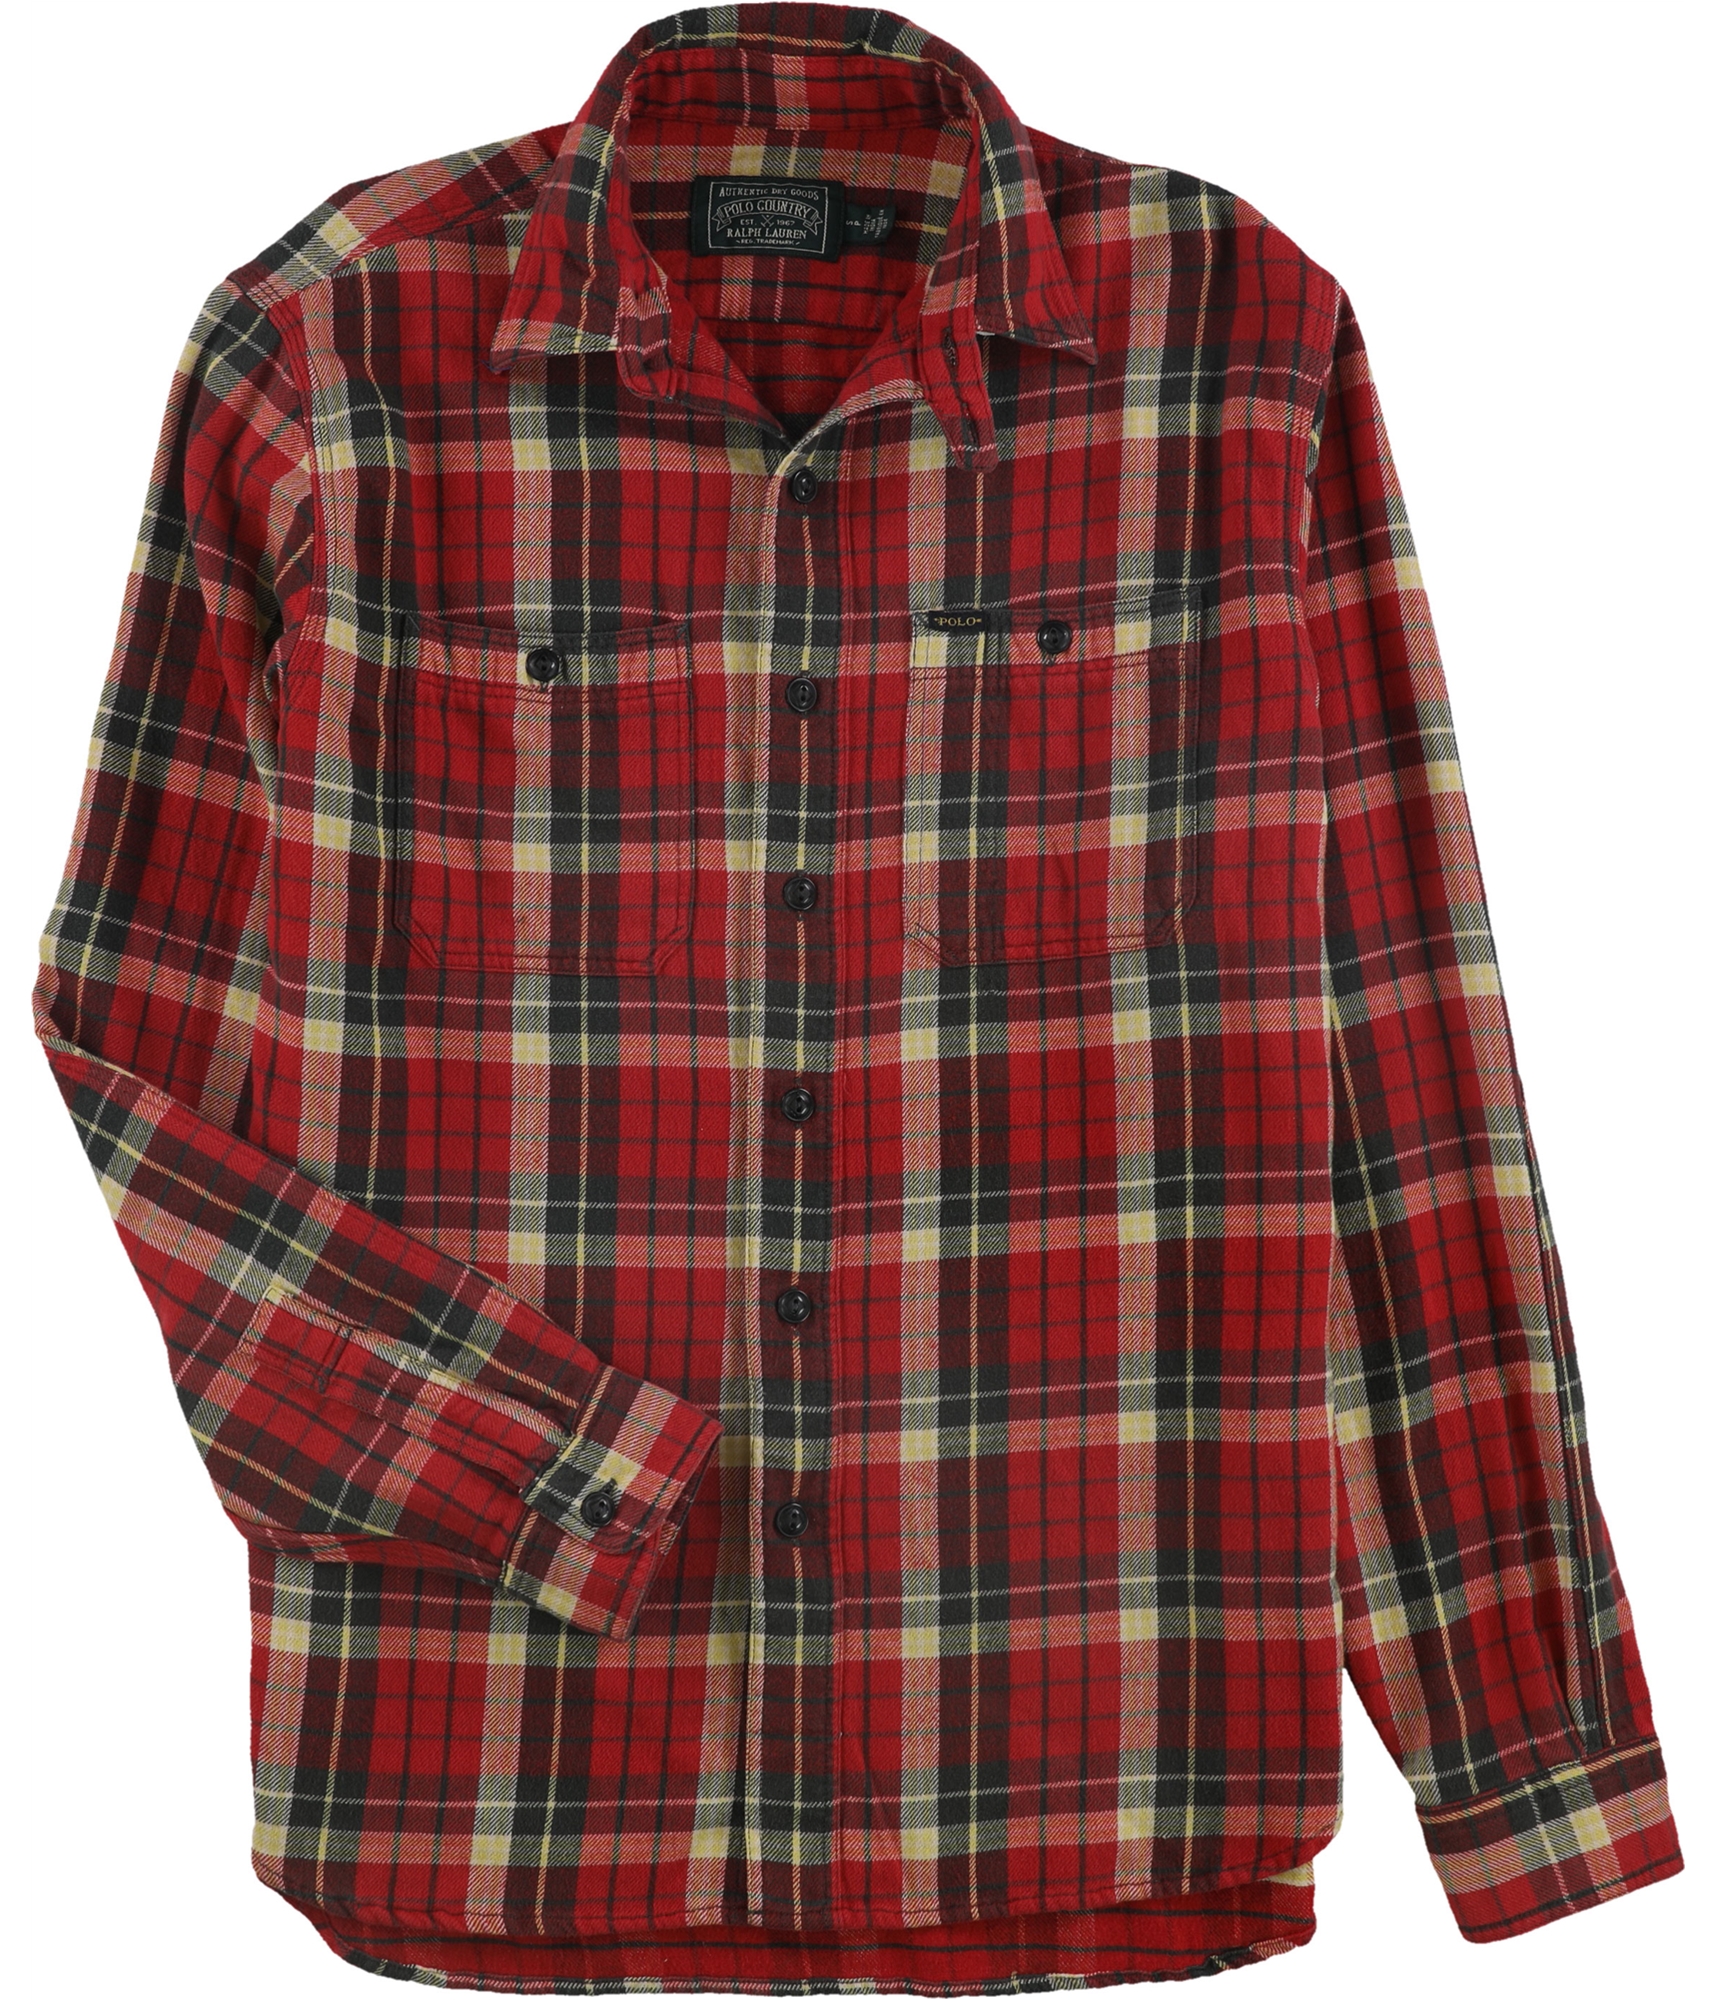 Ralph Lauren Mens Flannel Button Up Shirt, Red, Small | eBay